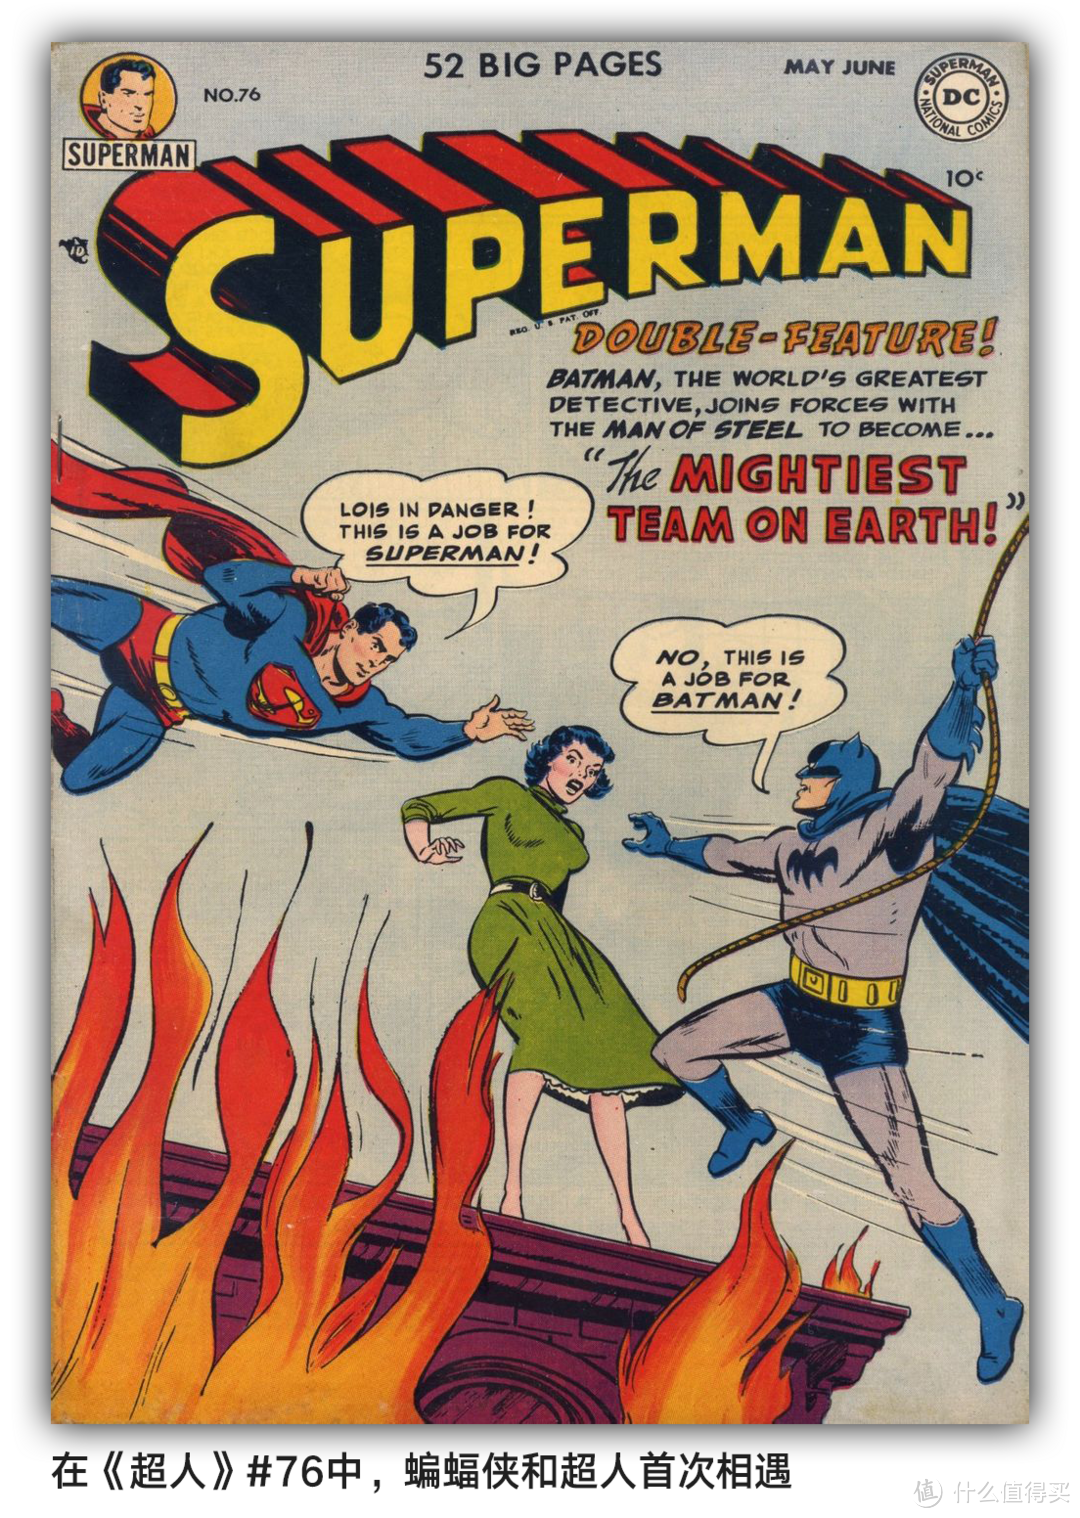 《正义联盟》漫画导读  超人